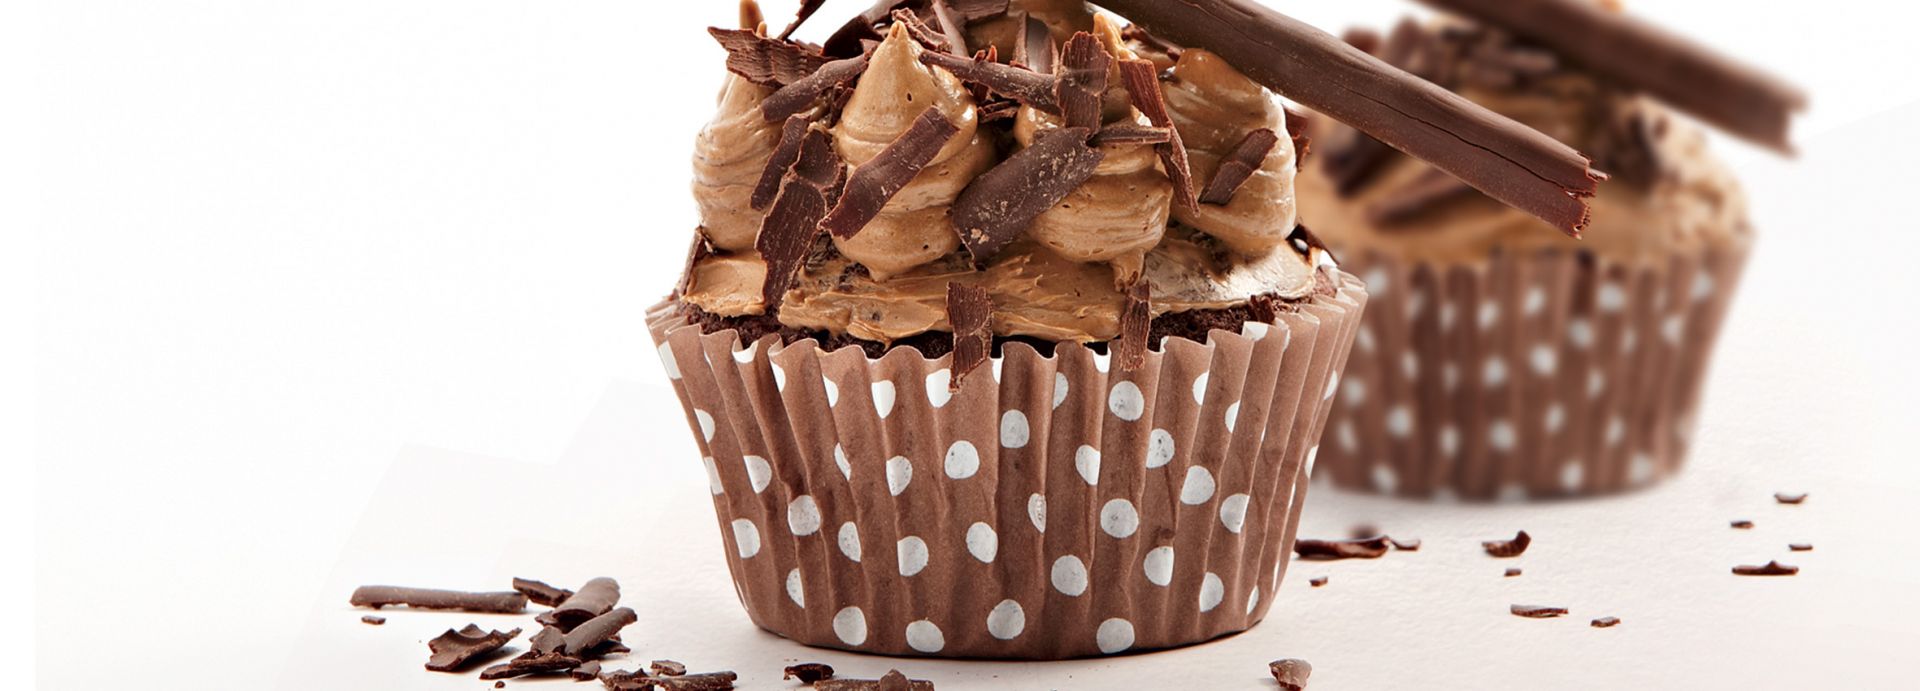 Chocolate and coffee cupcake